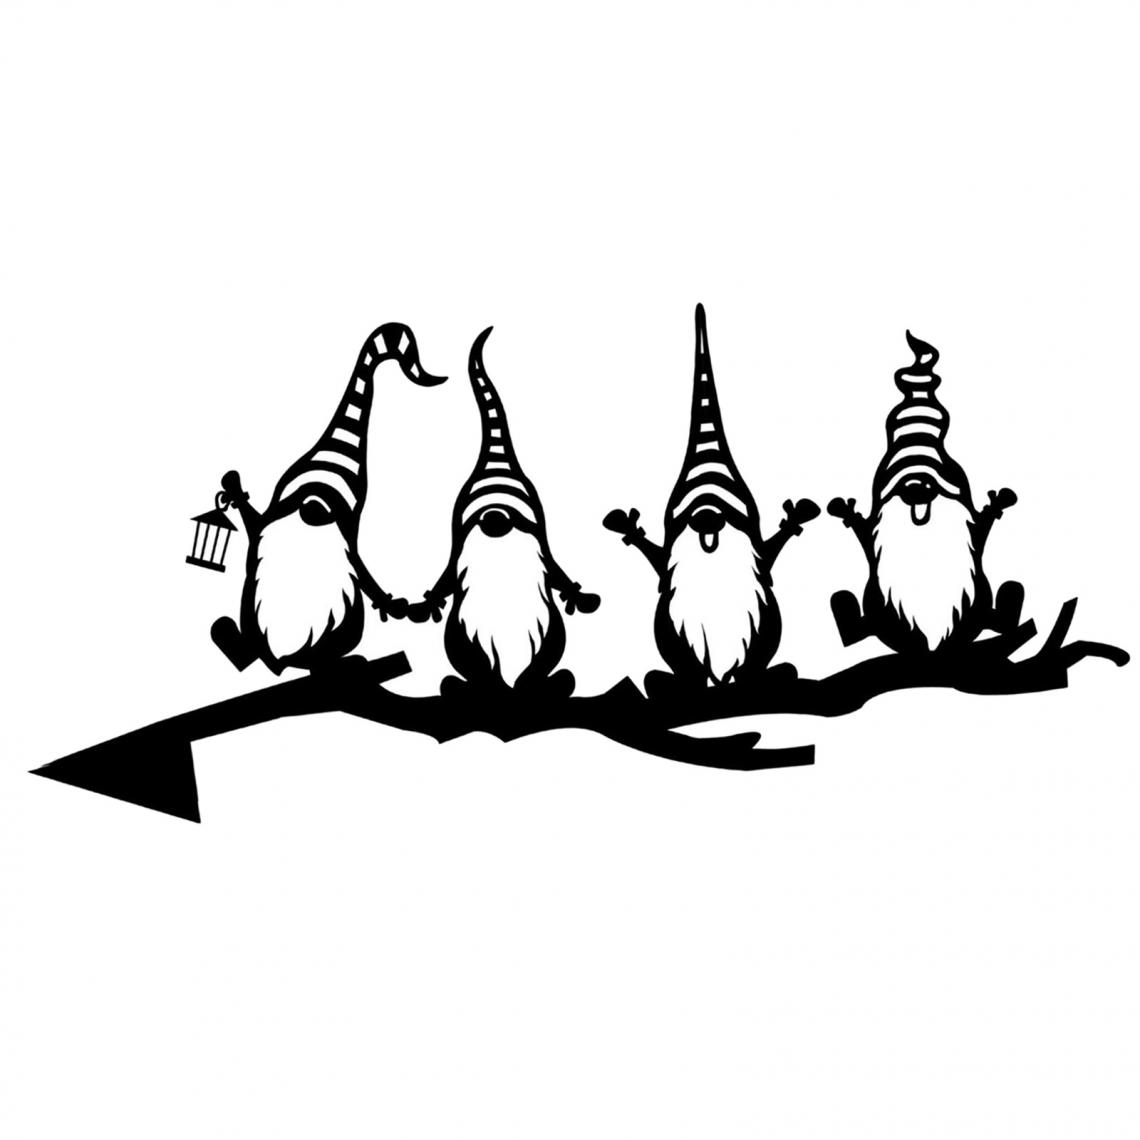 marque generique - Fer Branche D'arbre Gnomes Nain Décoration Jardin Mignon Jardin En Acier Creusé Silhouette Art Ornements pour La Maison Jardin Cour Patio - Petite déco d'exterieur